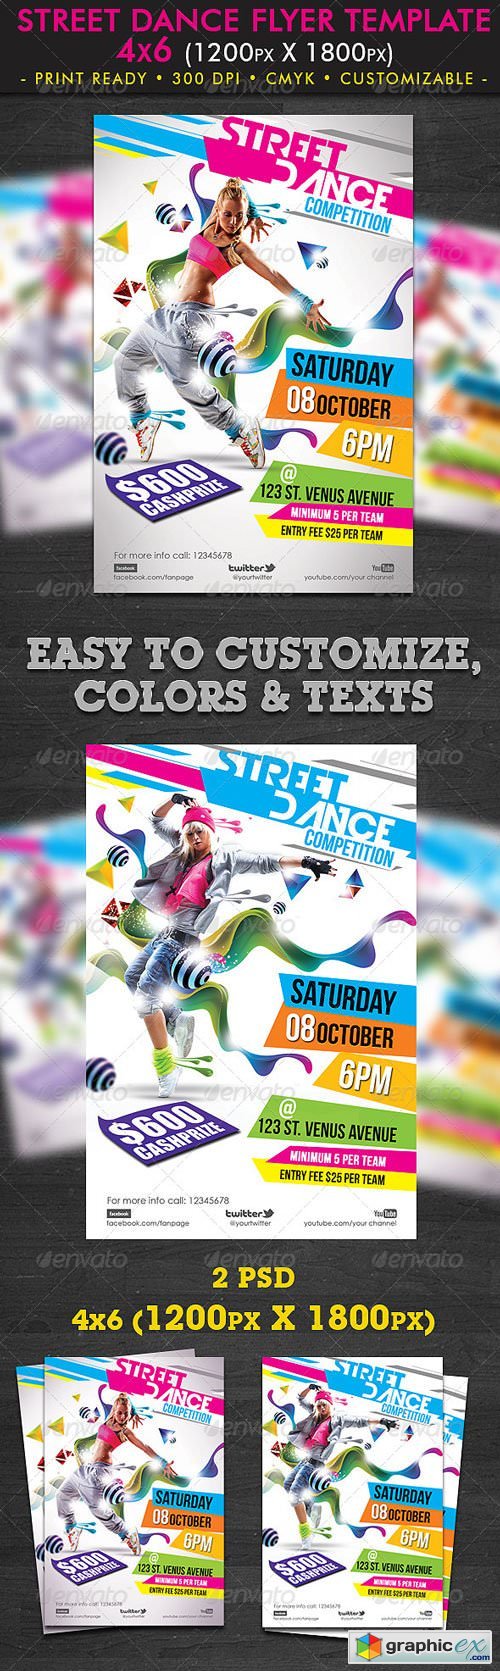 Street Dance Flyer Template 1625614